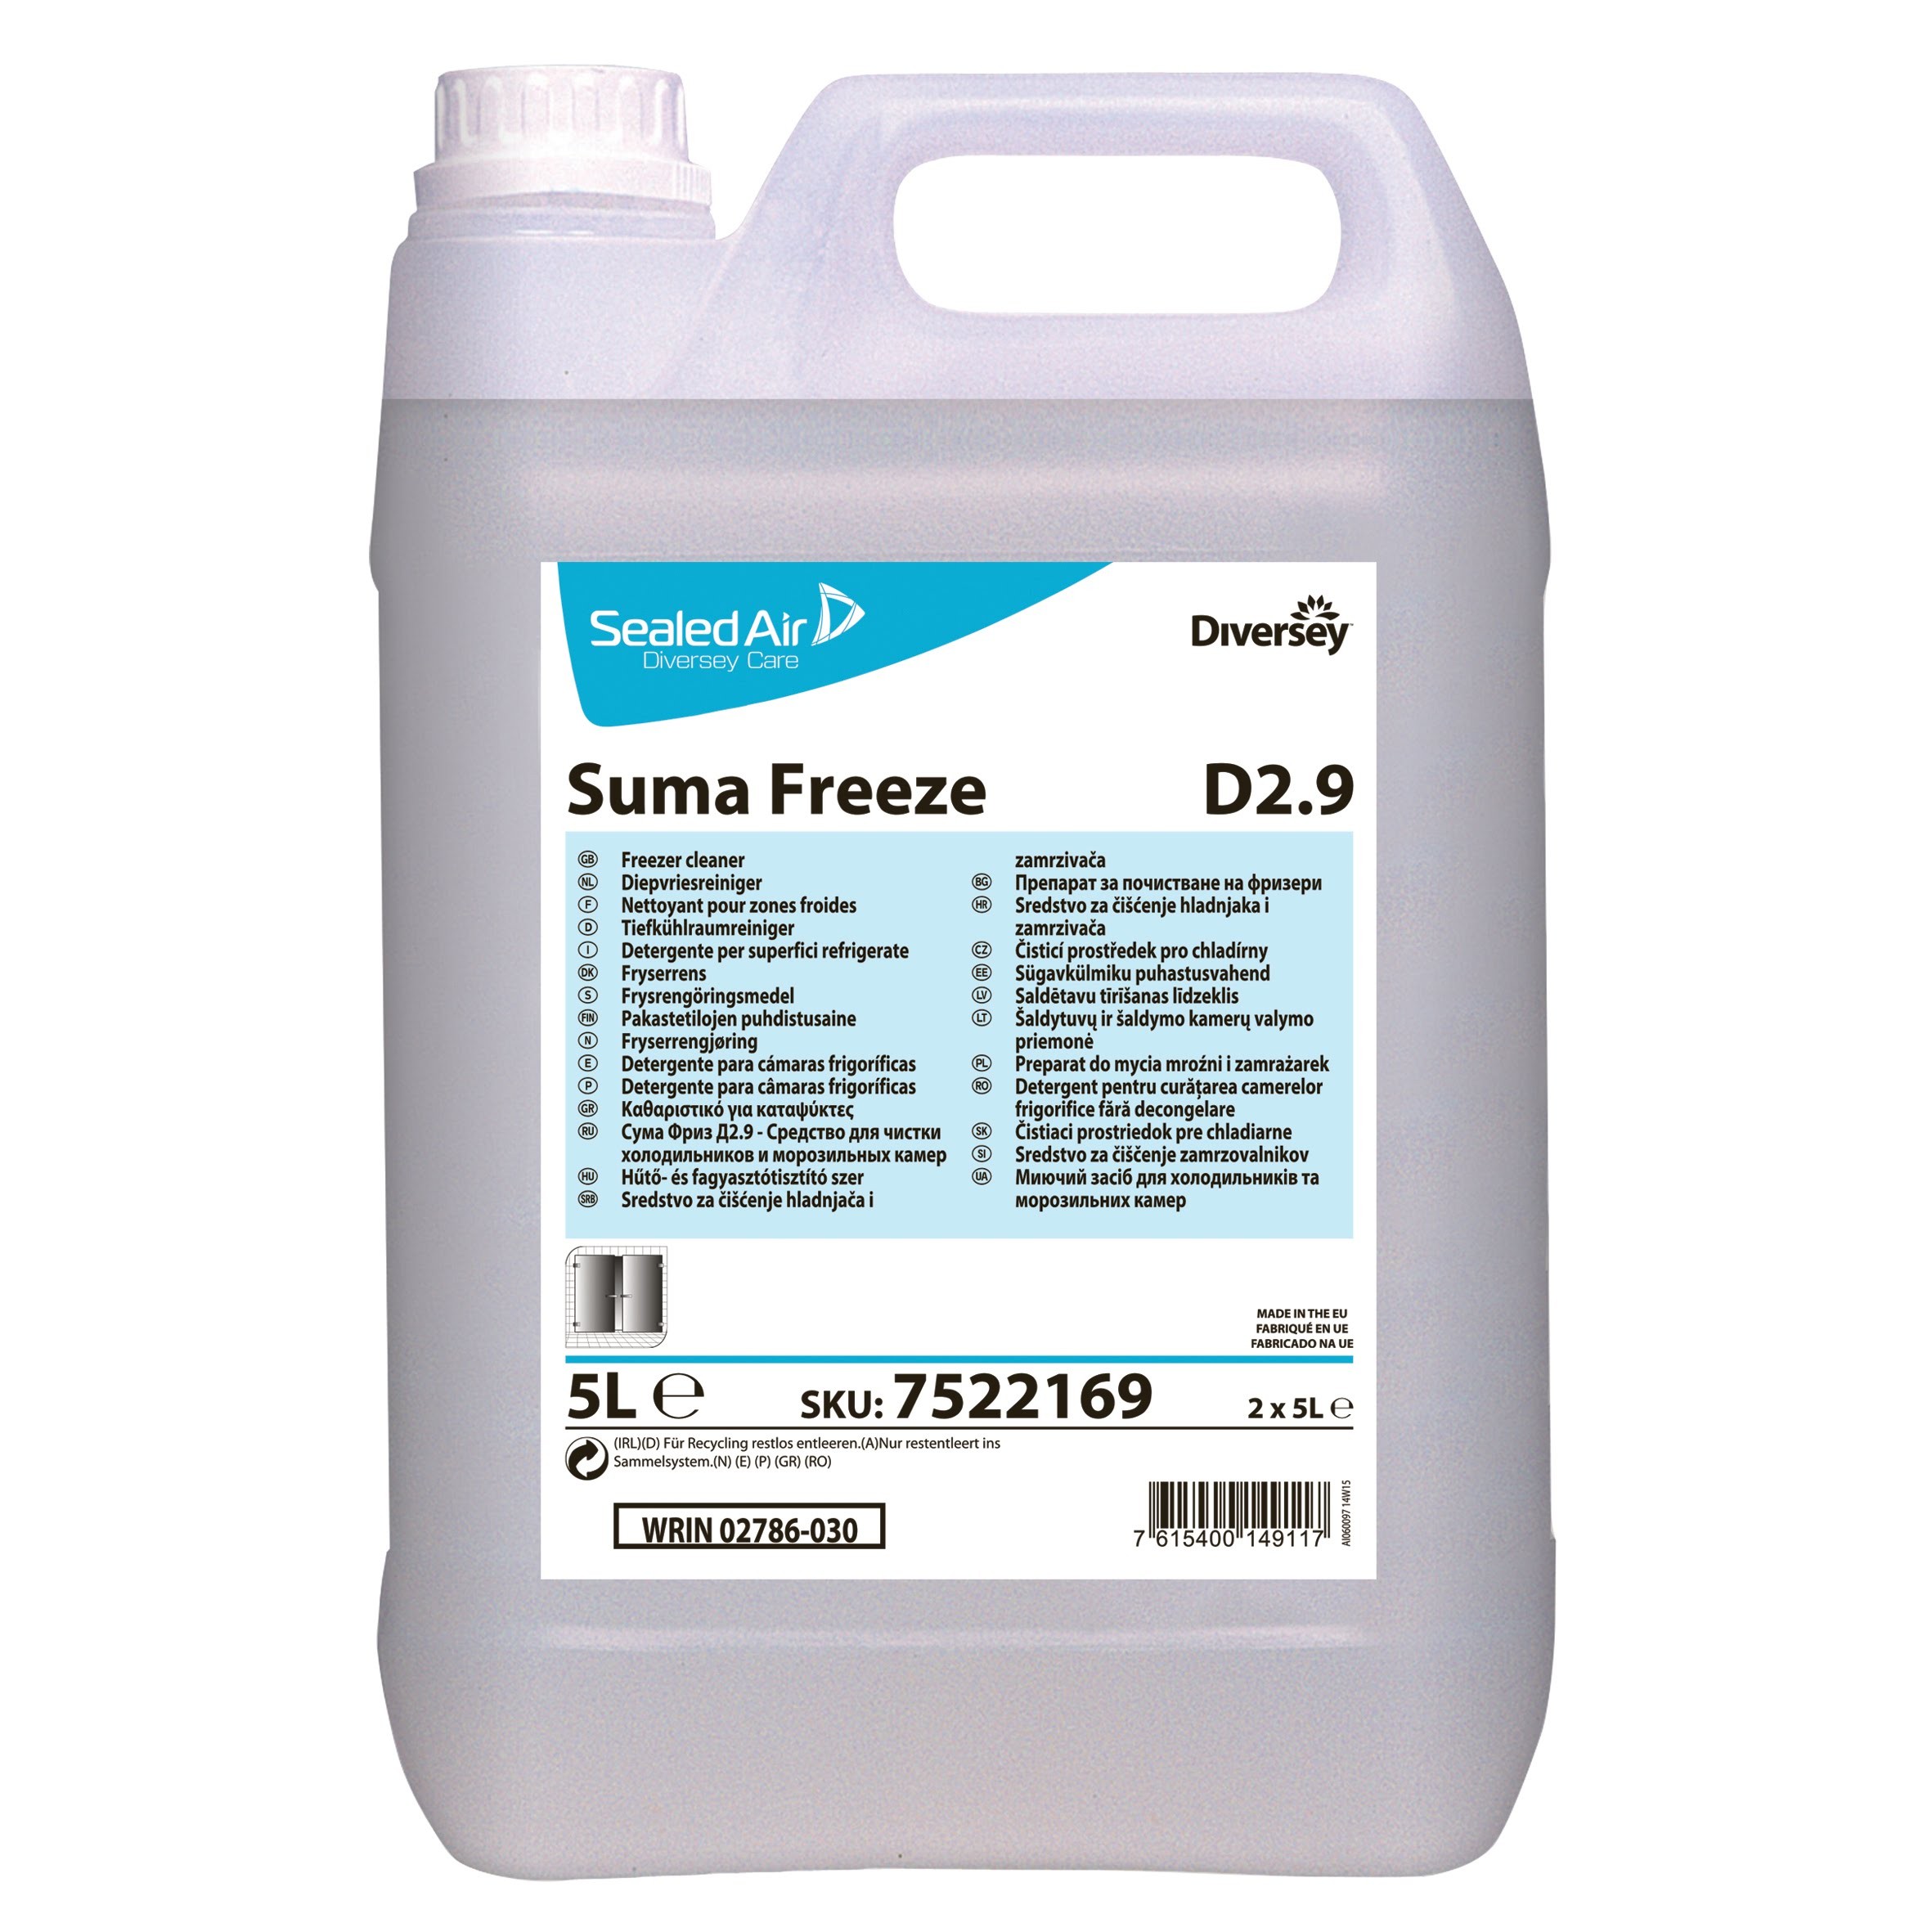 Suma Freeze D2.9 5L